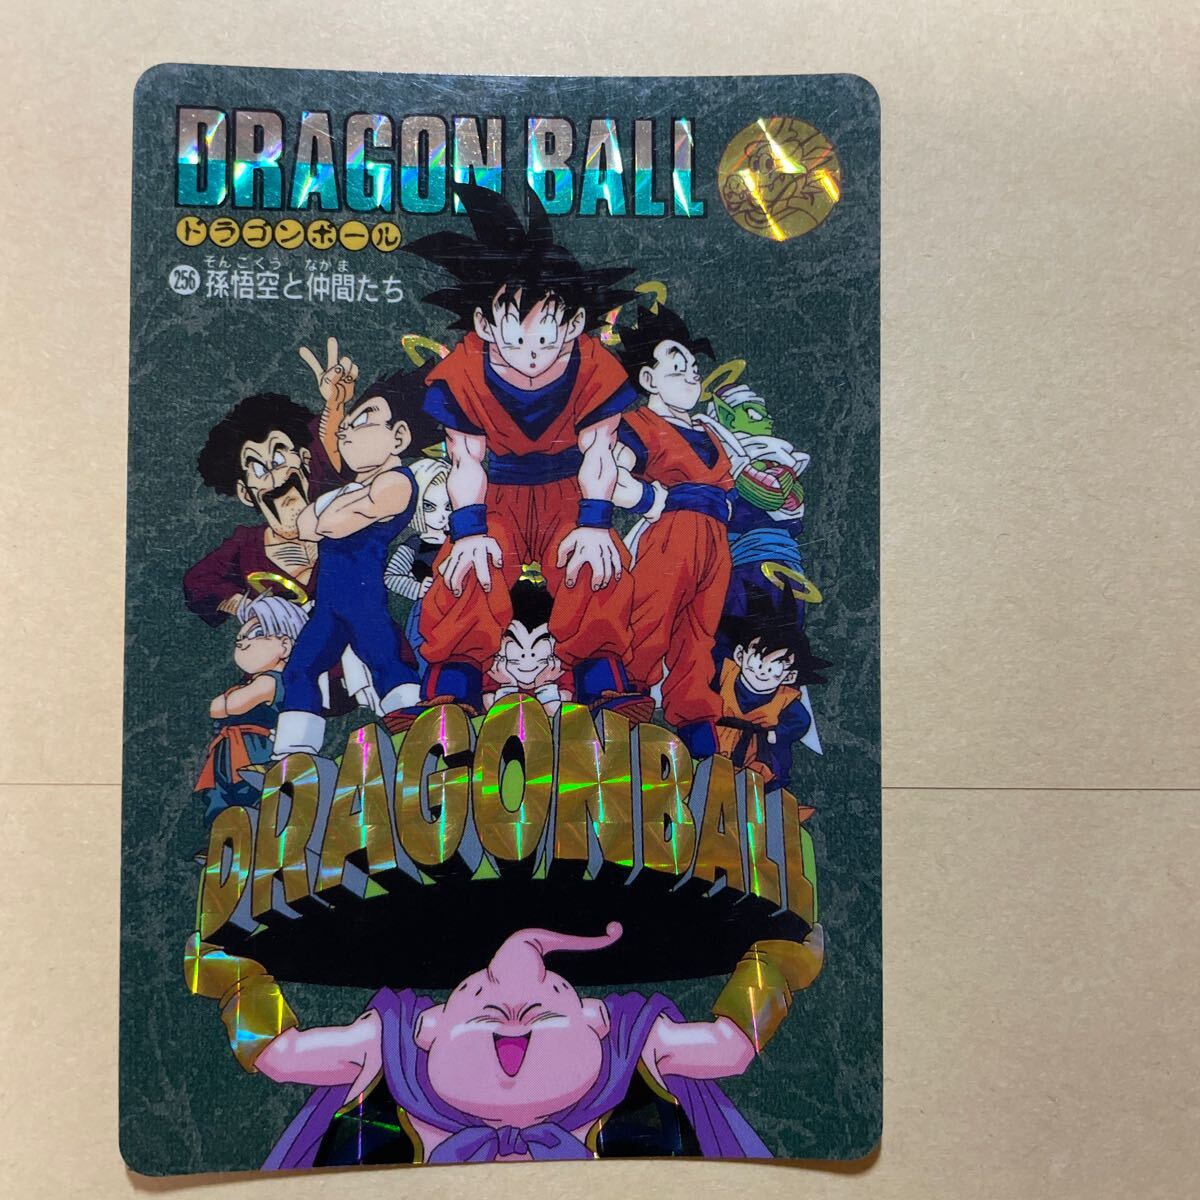  Dragon Ball Carddas 254.255.256